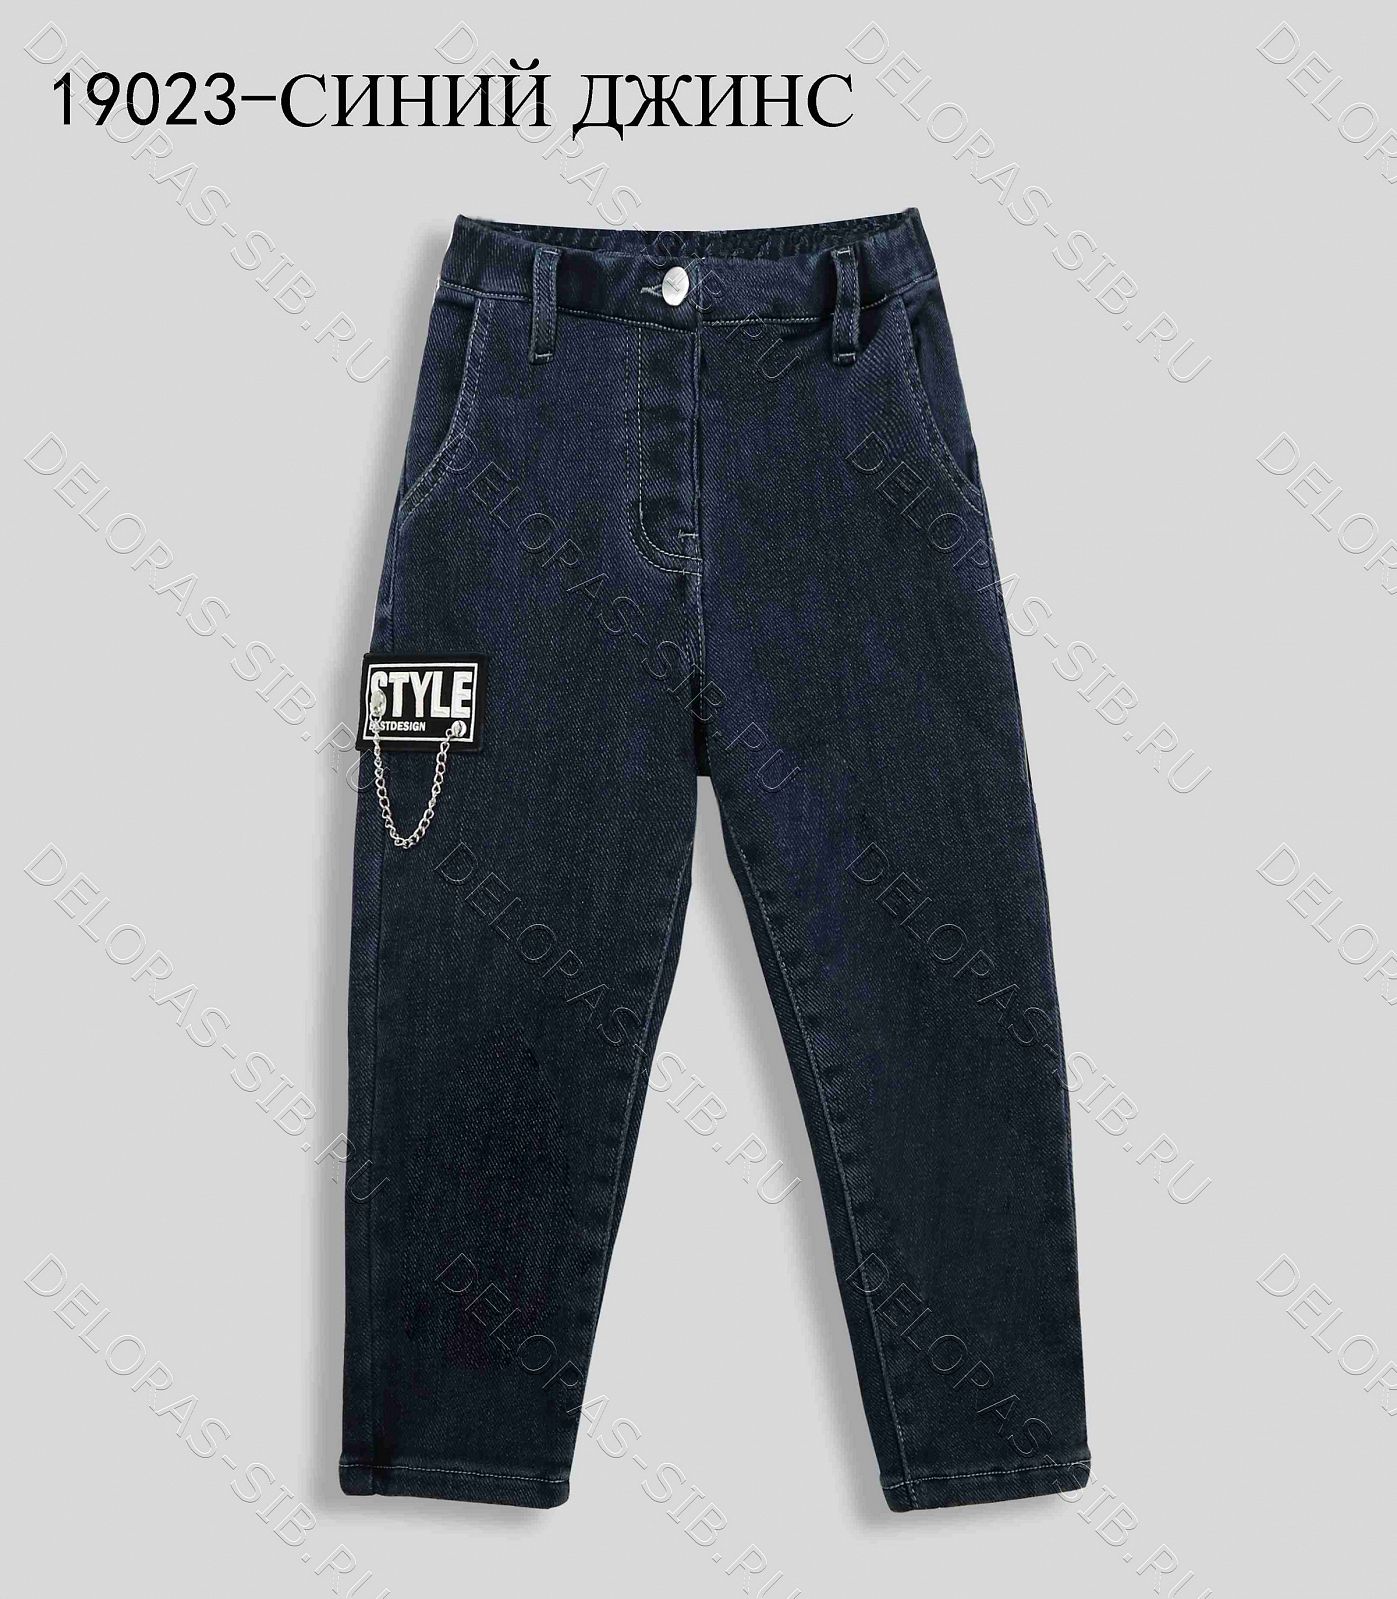 19023 Брюки джинс утепленные